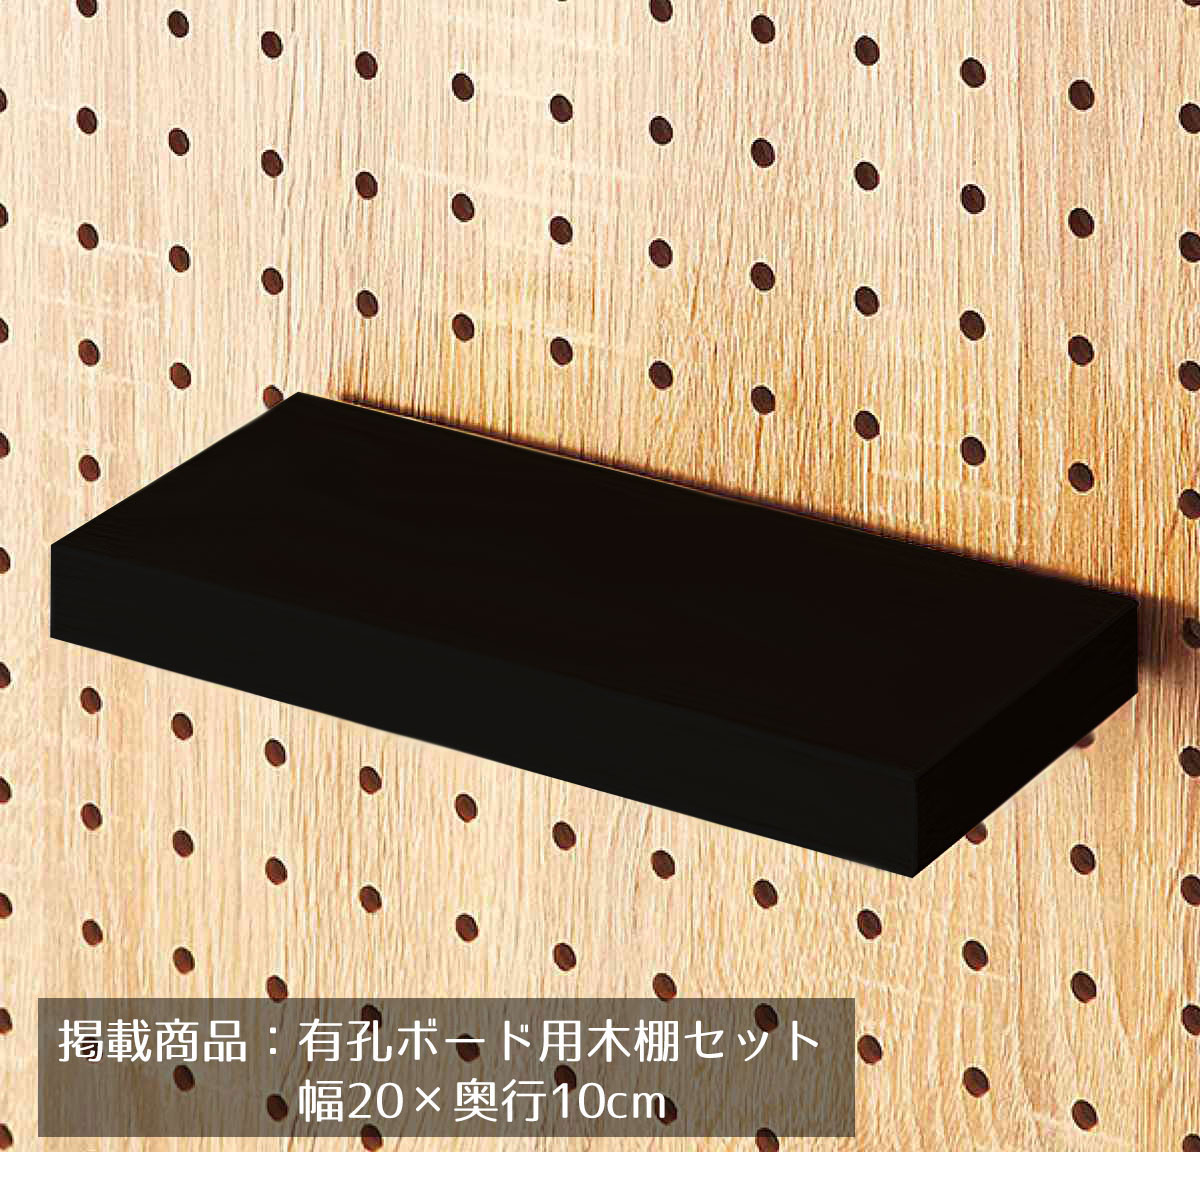 有孔パネル用木棚セット ブラック 幅20×奥行10cm 1セット有孔ボード専用オプションです。有孔パネルの木棚に安価なシェルフタイプ。木棚を乗せるだけで組立不要。送料無料 有孔ボード パンチングボード ペグボード 棚 壁面 収納